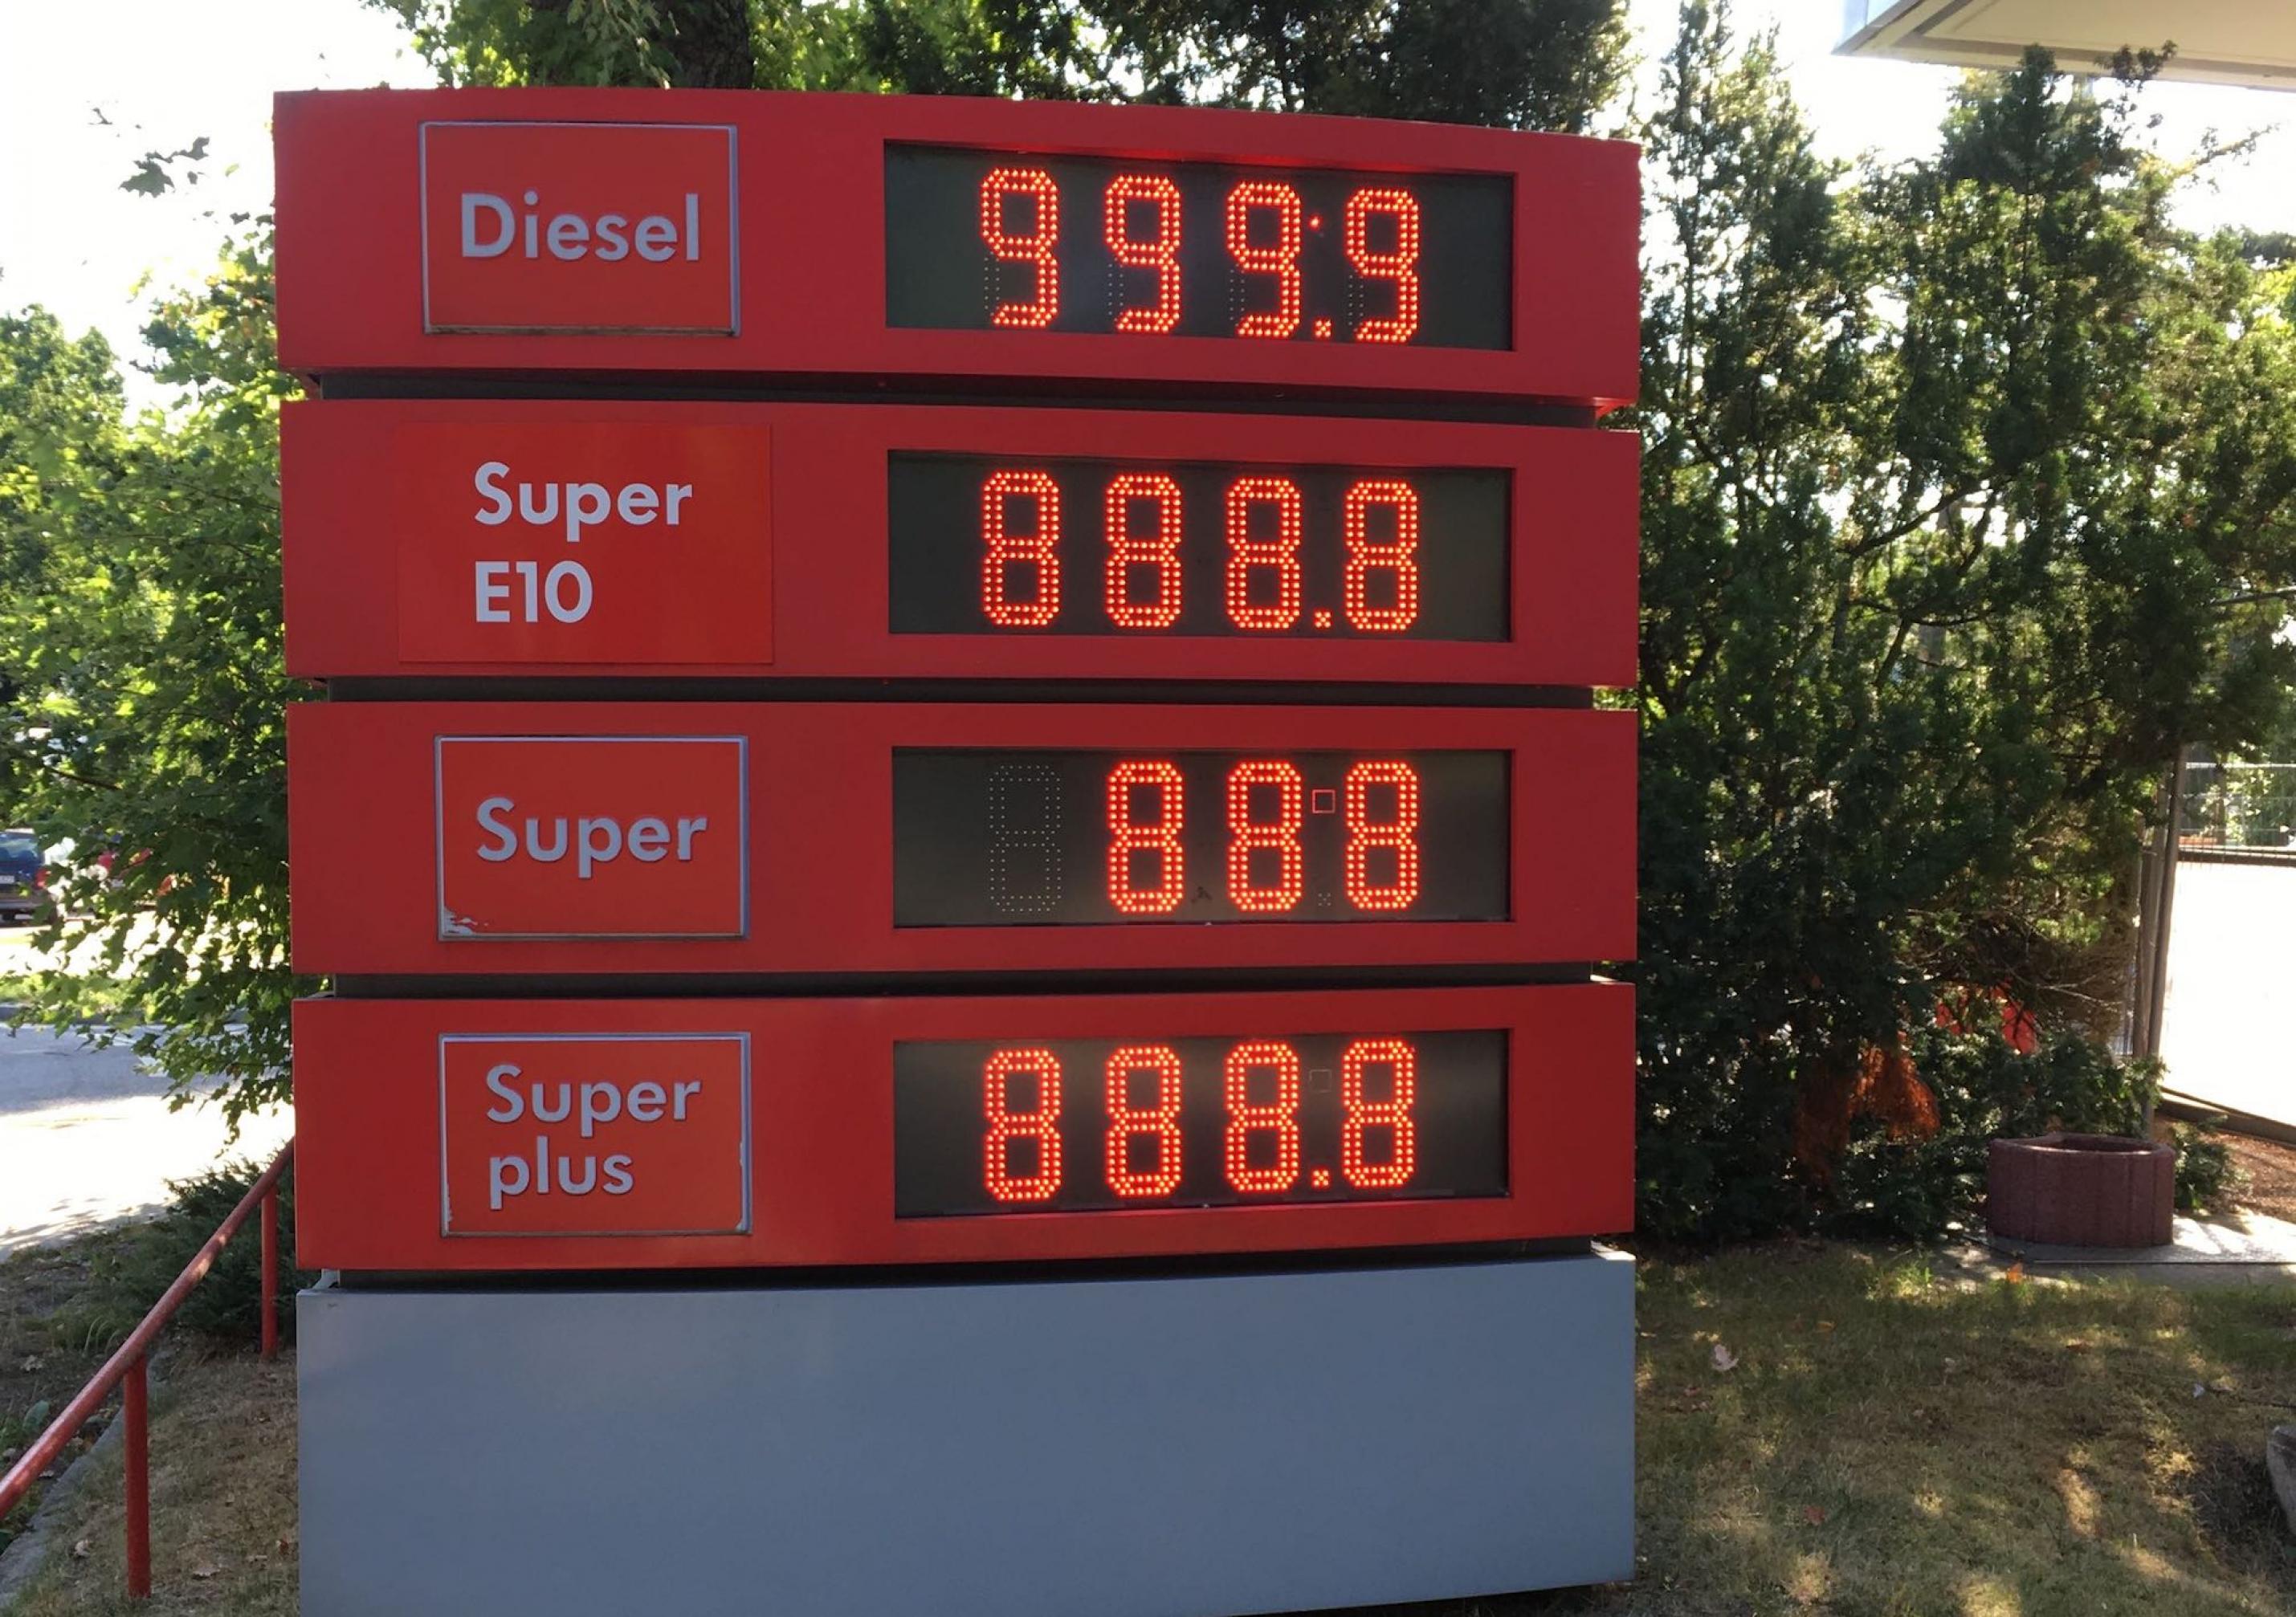 Leuchtschrift zeigt 999,9 und 888,8 neben den Worten „Diesel“ und Super E10". Die Preise der Zukunft? Nicht ganz. Benzin und Diesel werden teurer, wenn die CO2-Abgabe kommt, aber zehn Euro pro Liter sind dennoch unrealistisch. Das Bild zeigt die verwaiste Anzeige einer aufgegebenen Tankstelle.